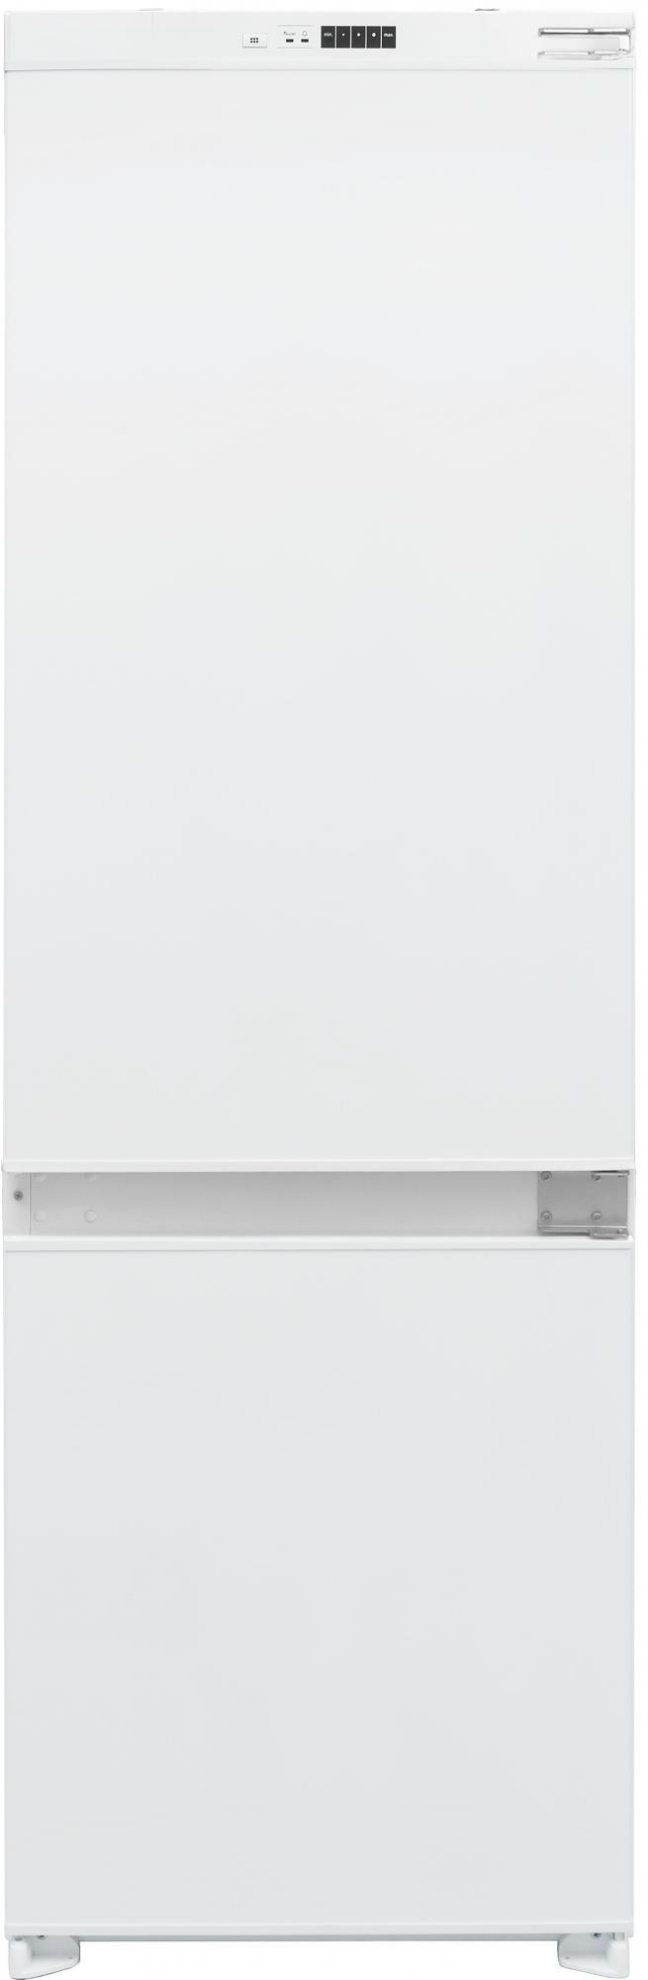 Изображение Холодильник Hyundai HBR 1782 белый (A+,287 кВтч/год)